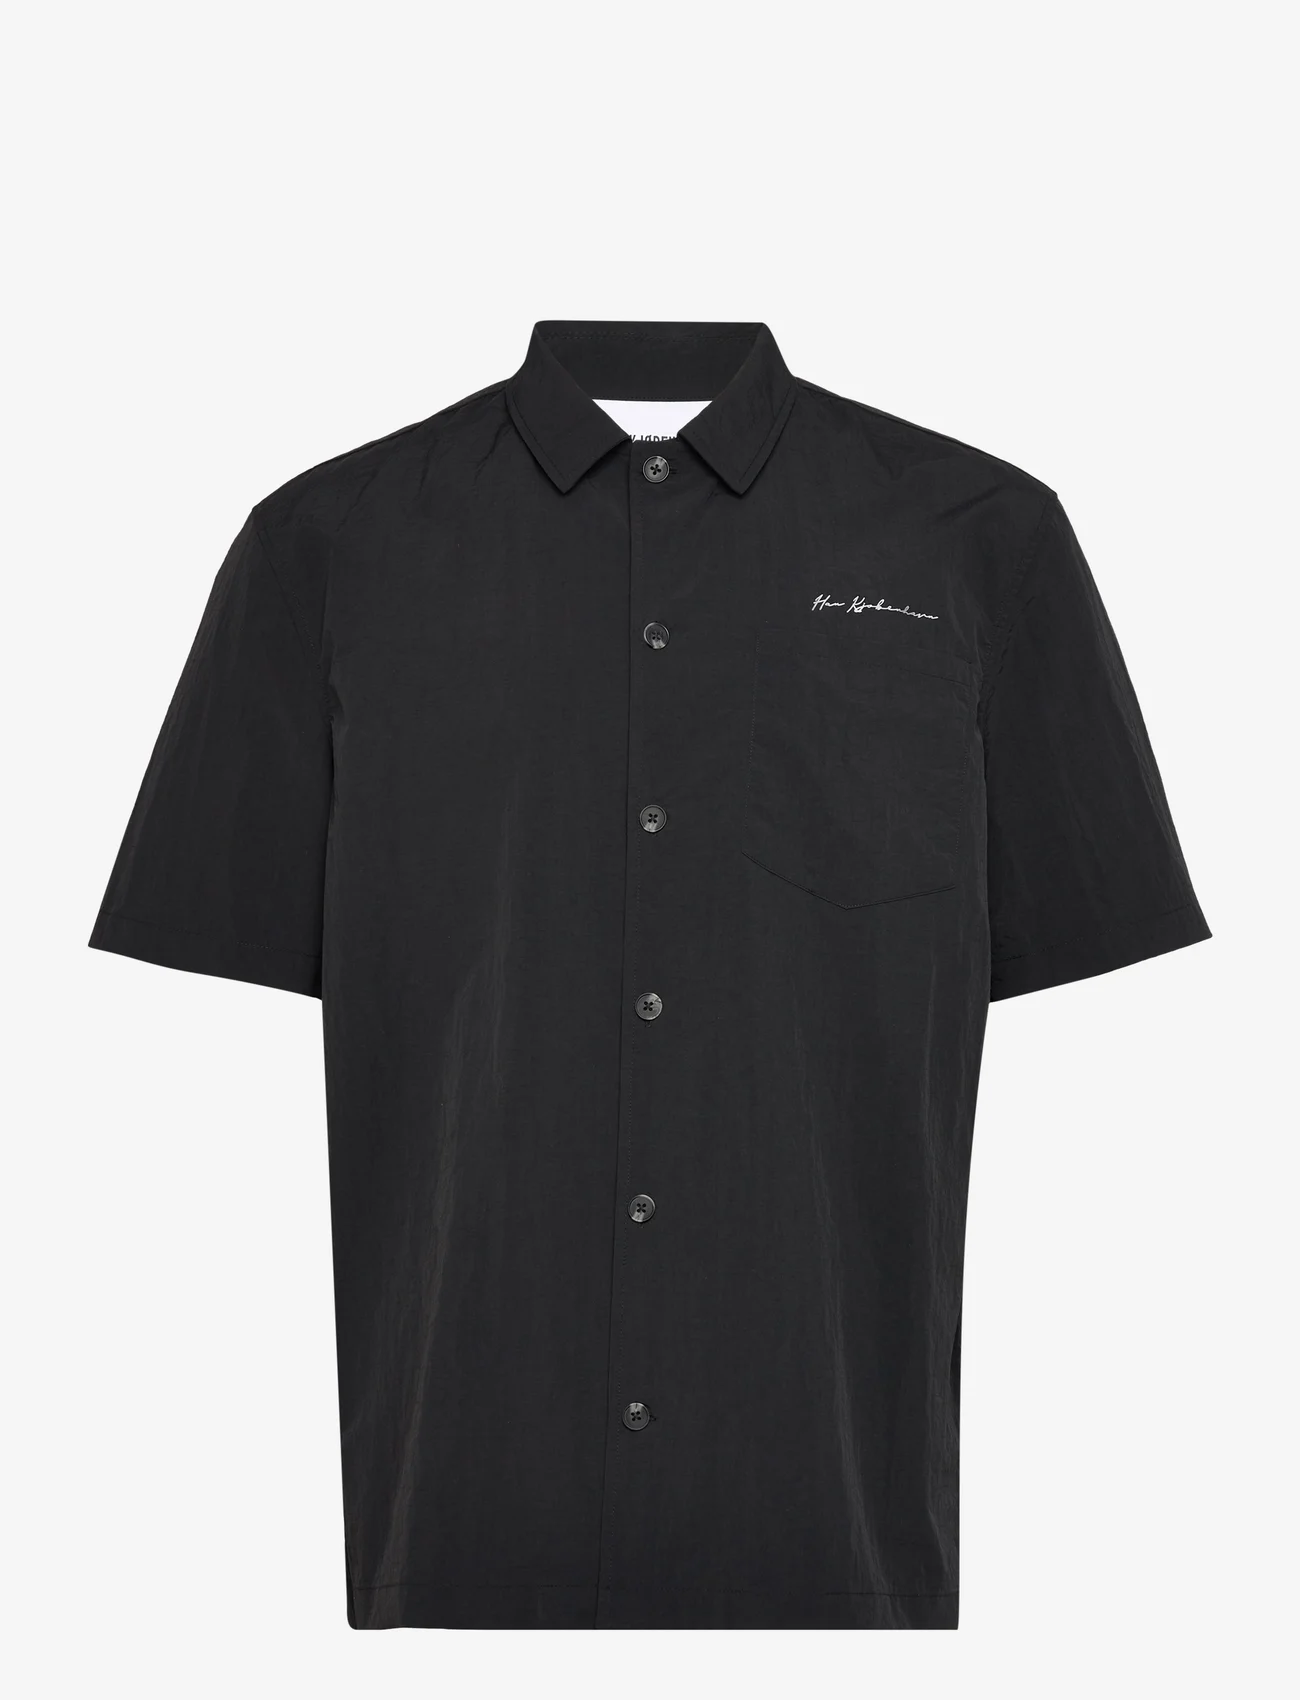 HAN Kjøbenhavn - Nylon Summer Shirt Short Sleeve - black - 0